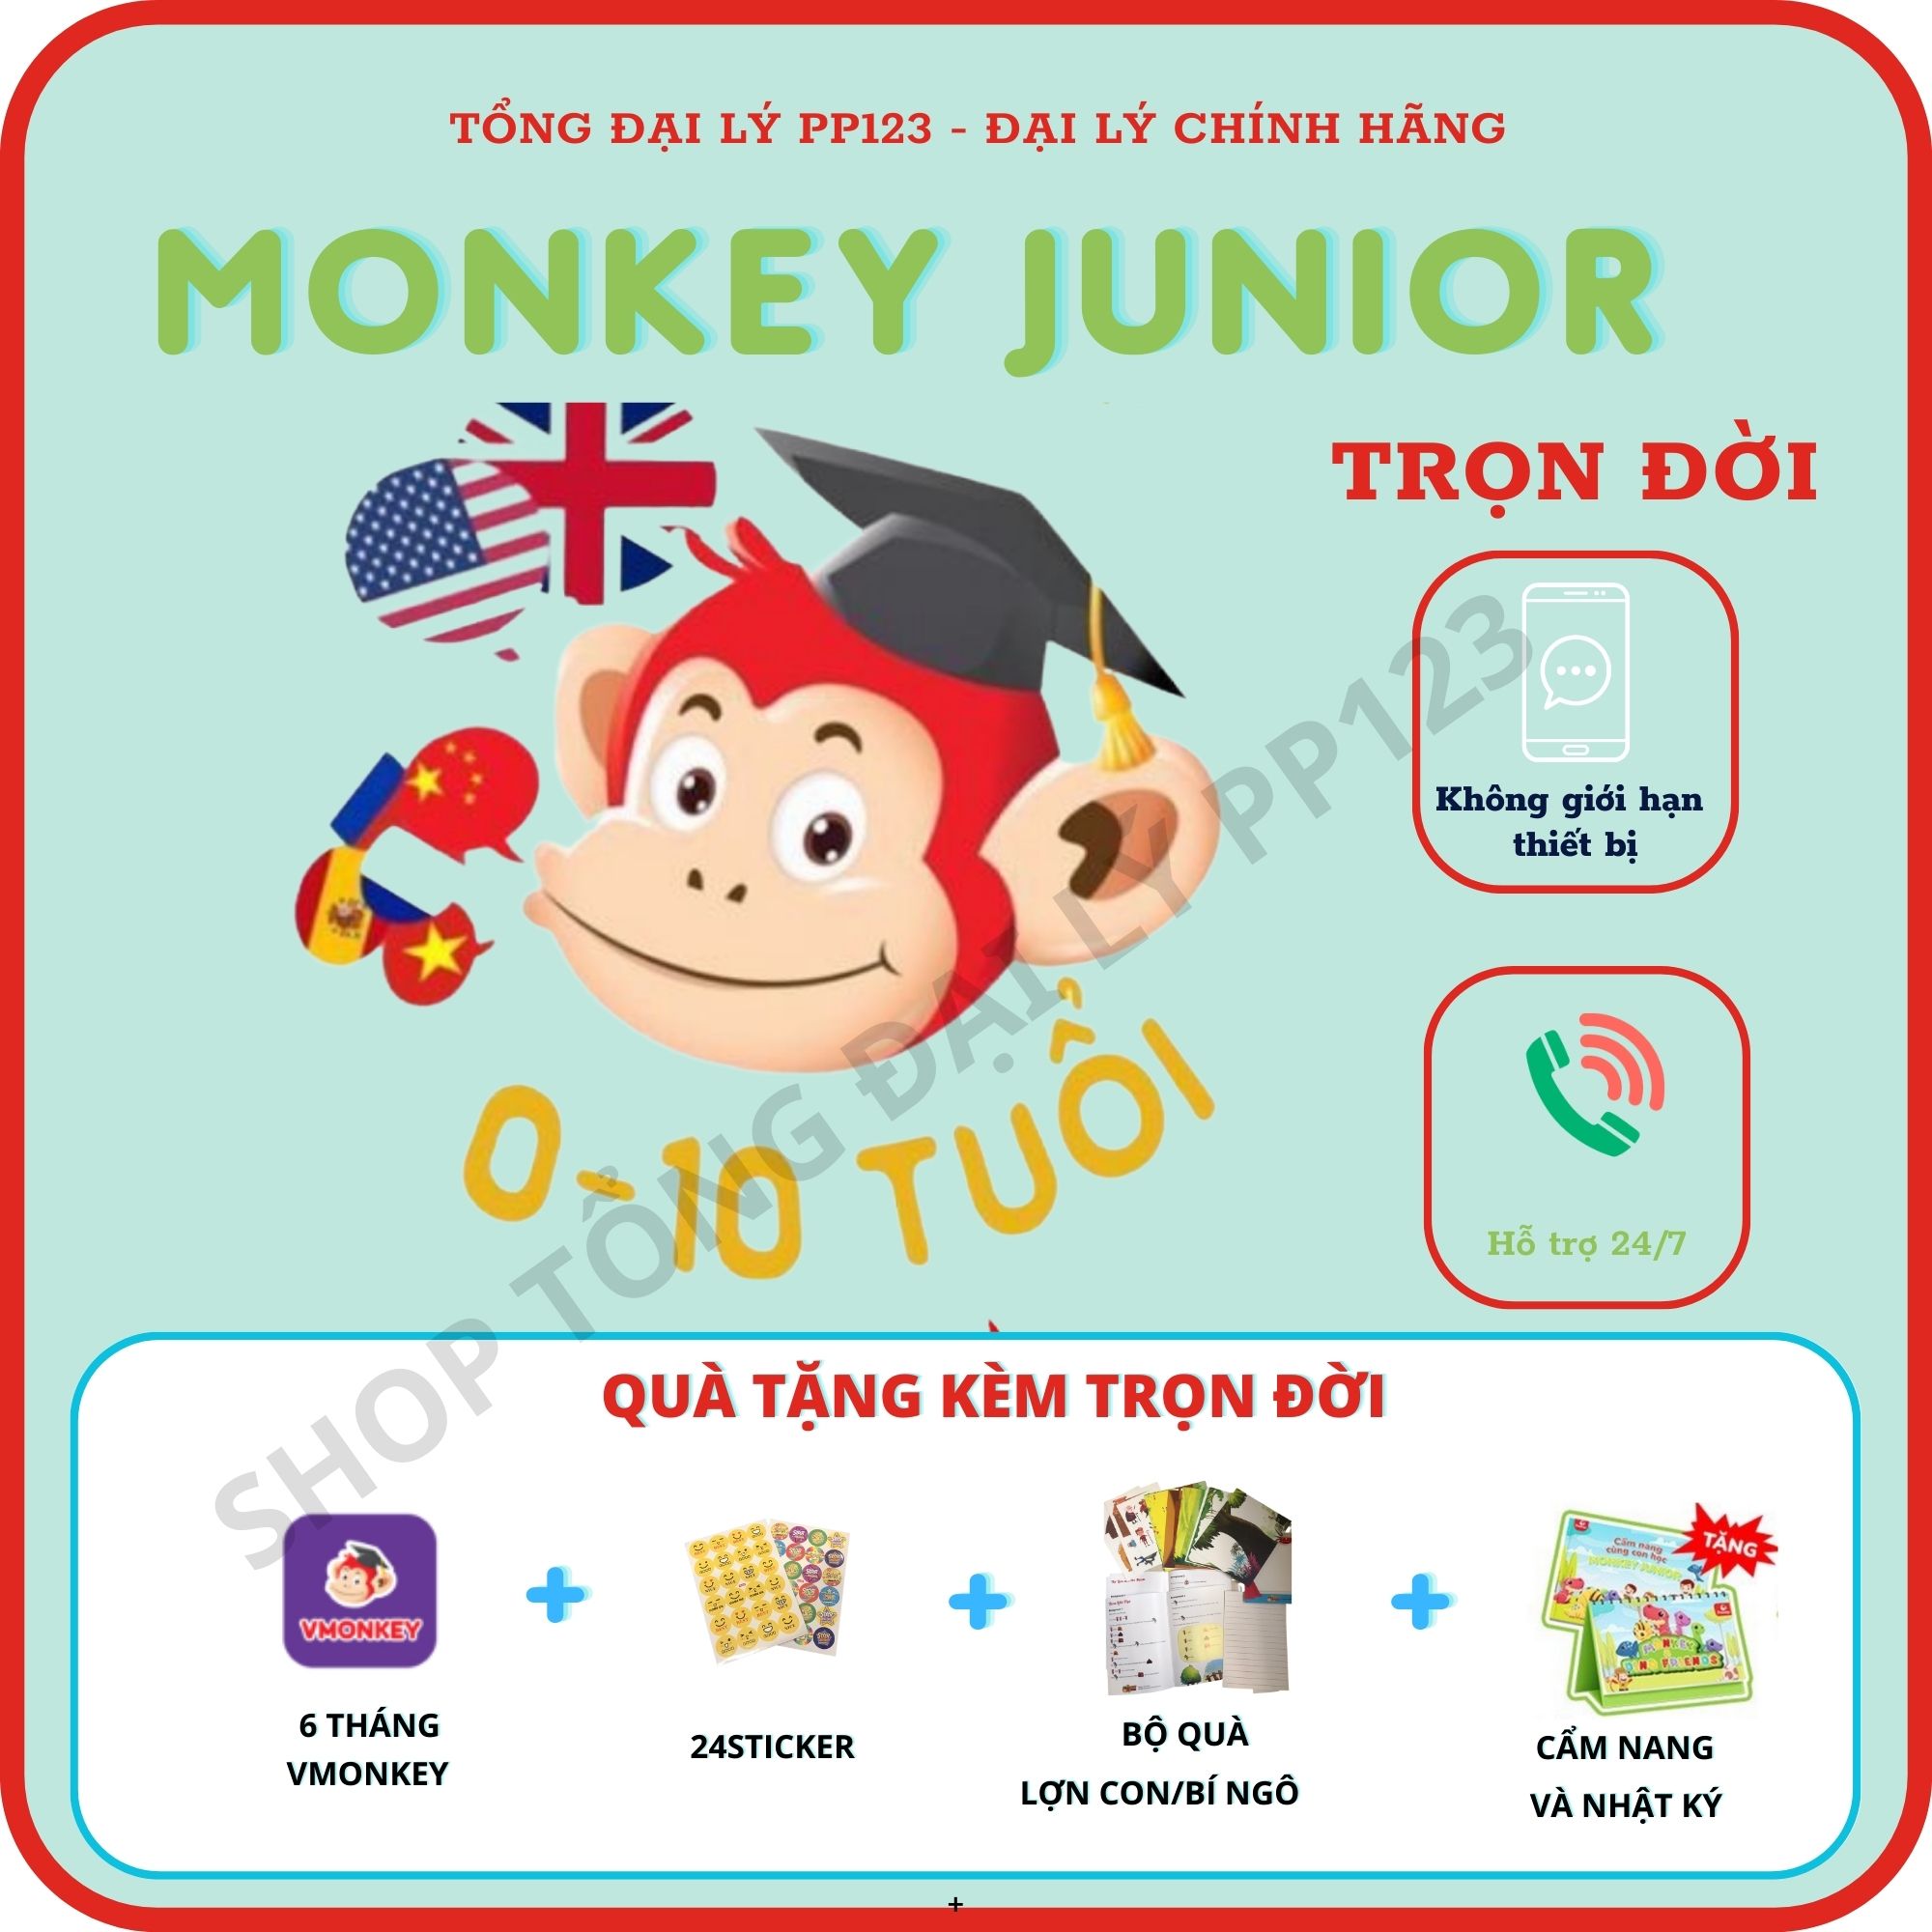 Monkey Junior TRỌN ĐỜI -Voucher Mã học  Tiếng Anh online